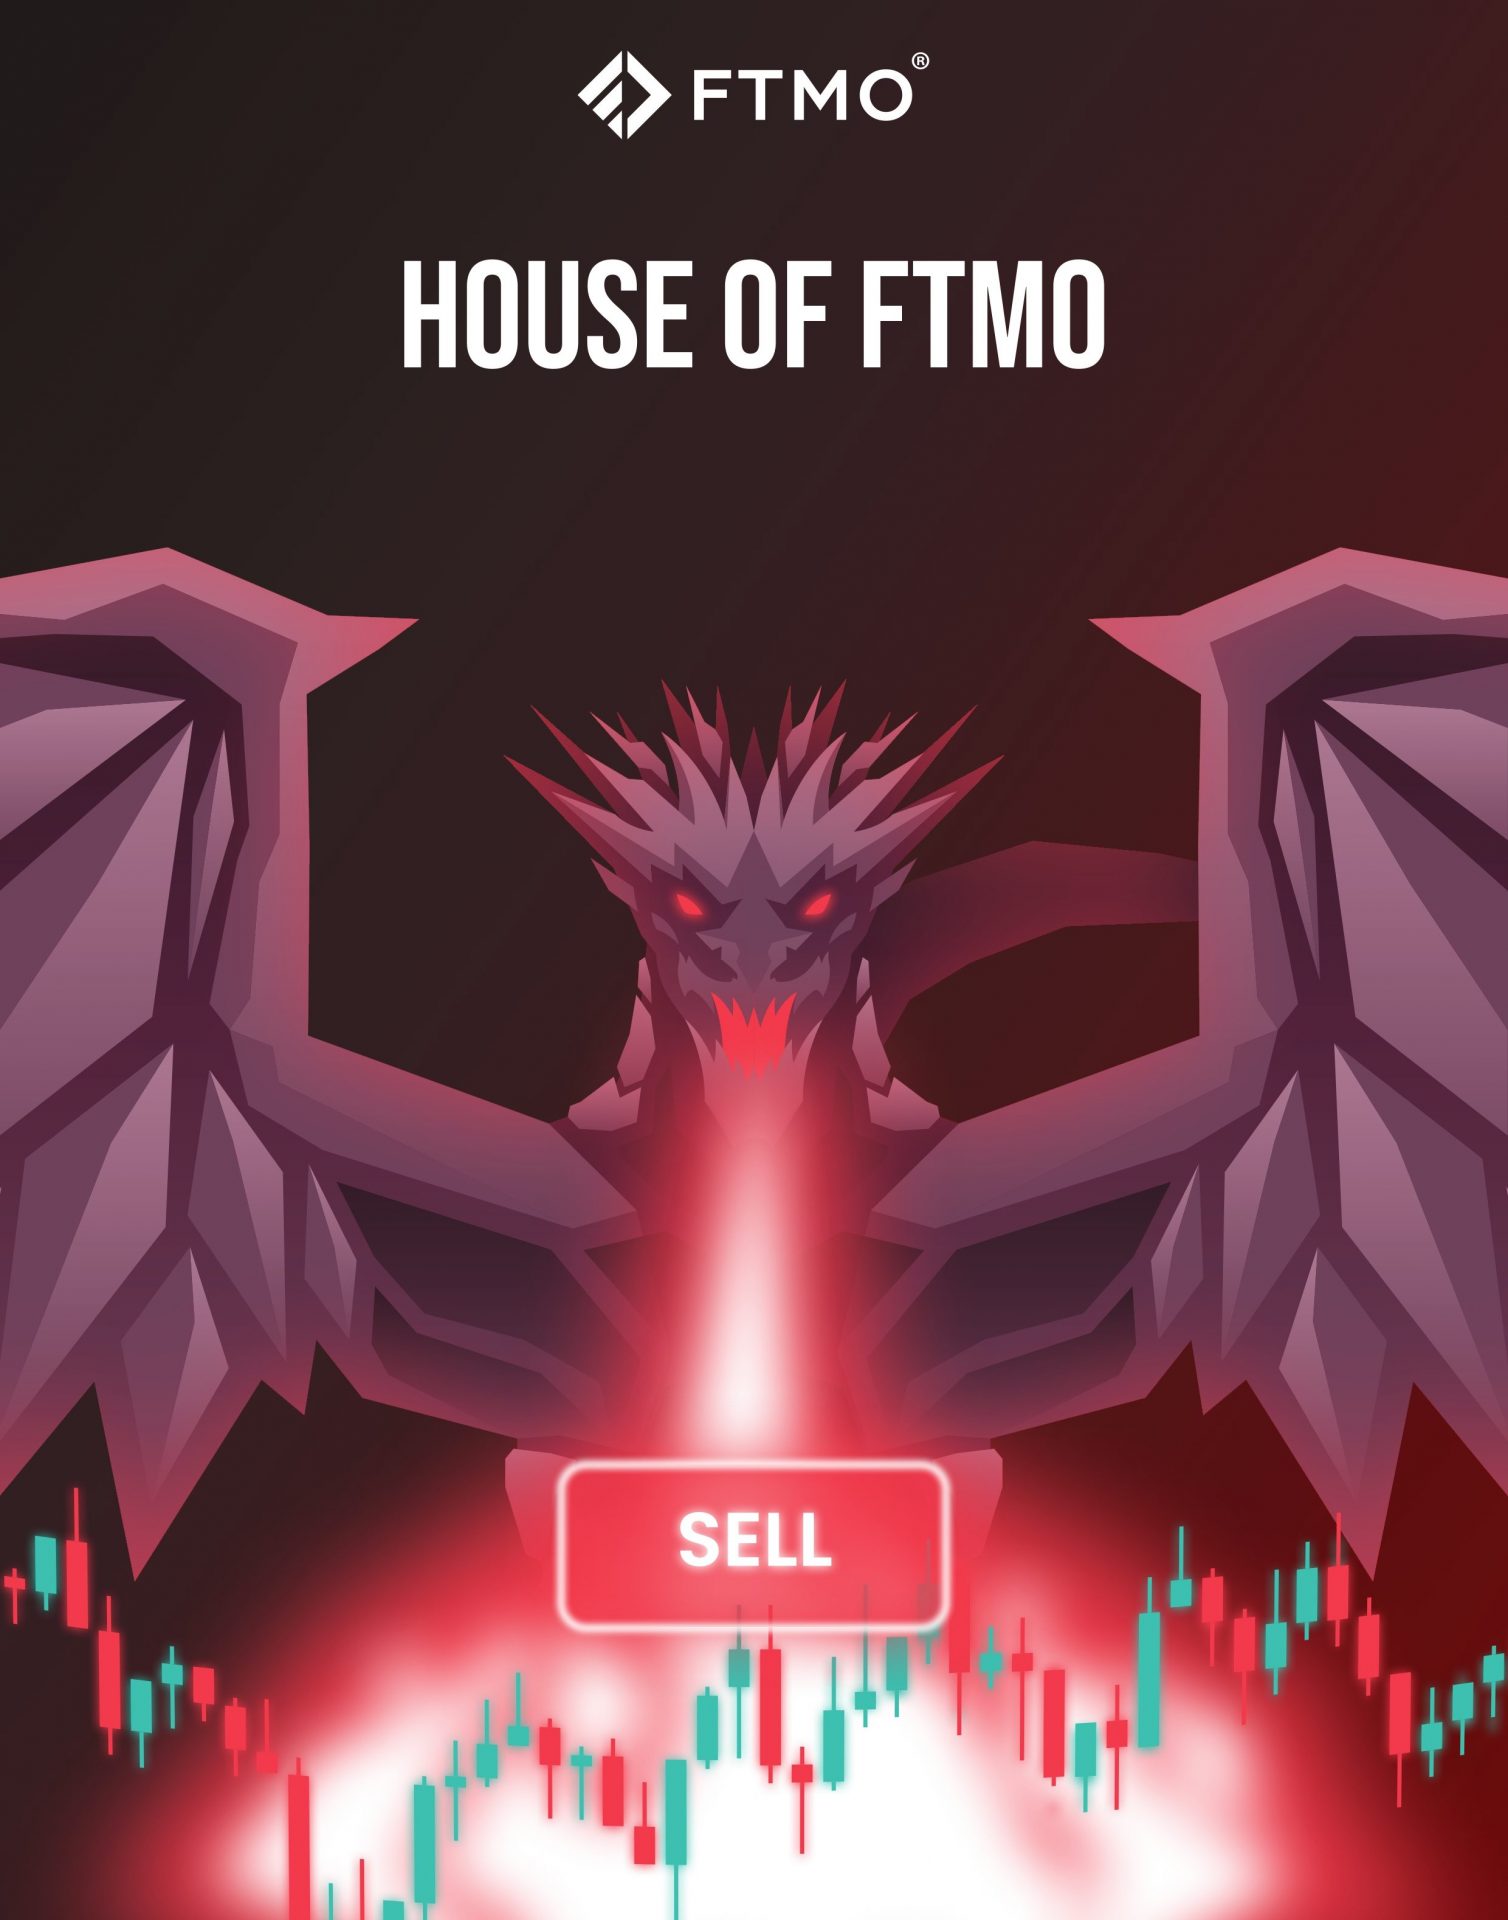 FTMO Challenge, FTMO reglas, empresa FTMO, Empresa FTMO, Otakar Šuffner, FTMO CEO, FTMO proceso evaluacion, FTMO Retiros, FTMO opiniones